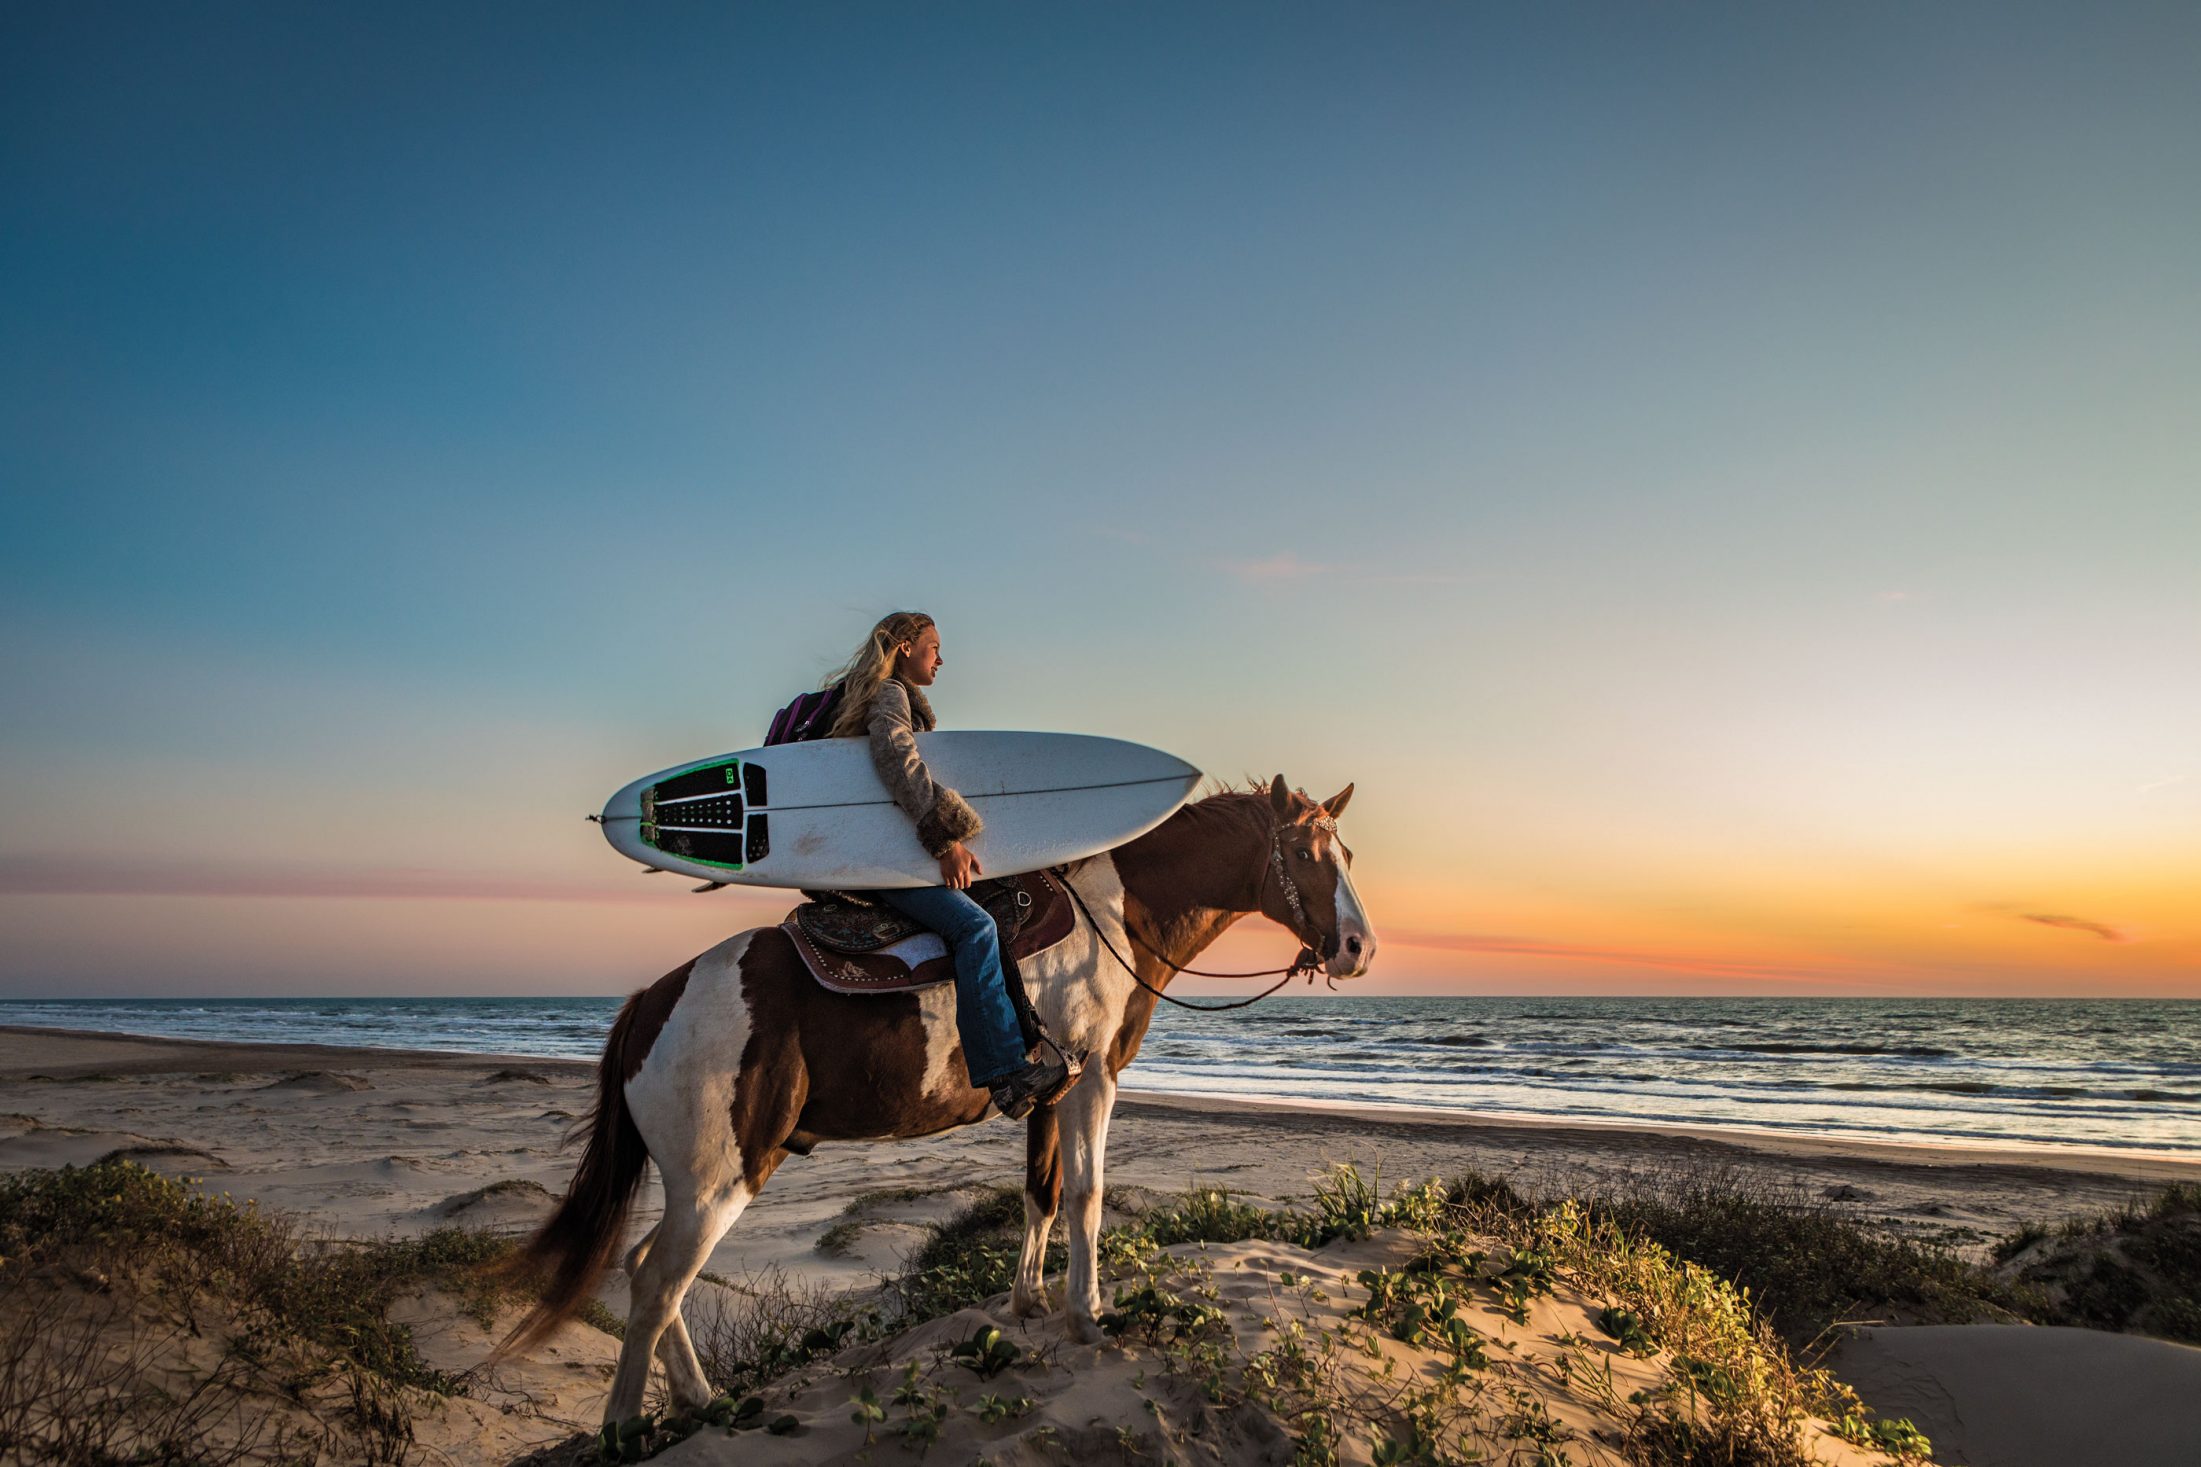 Surfer on horseback